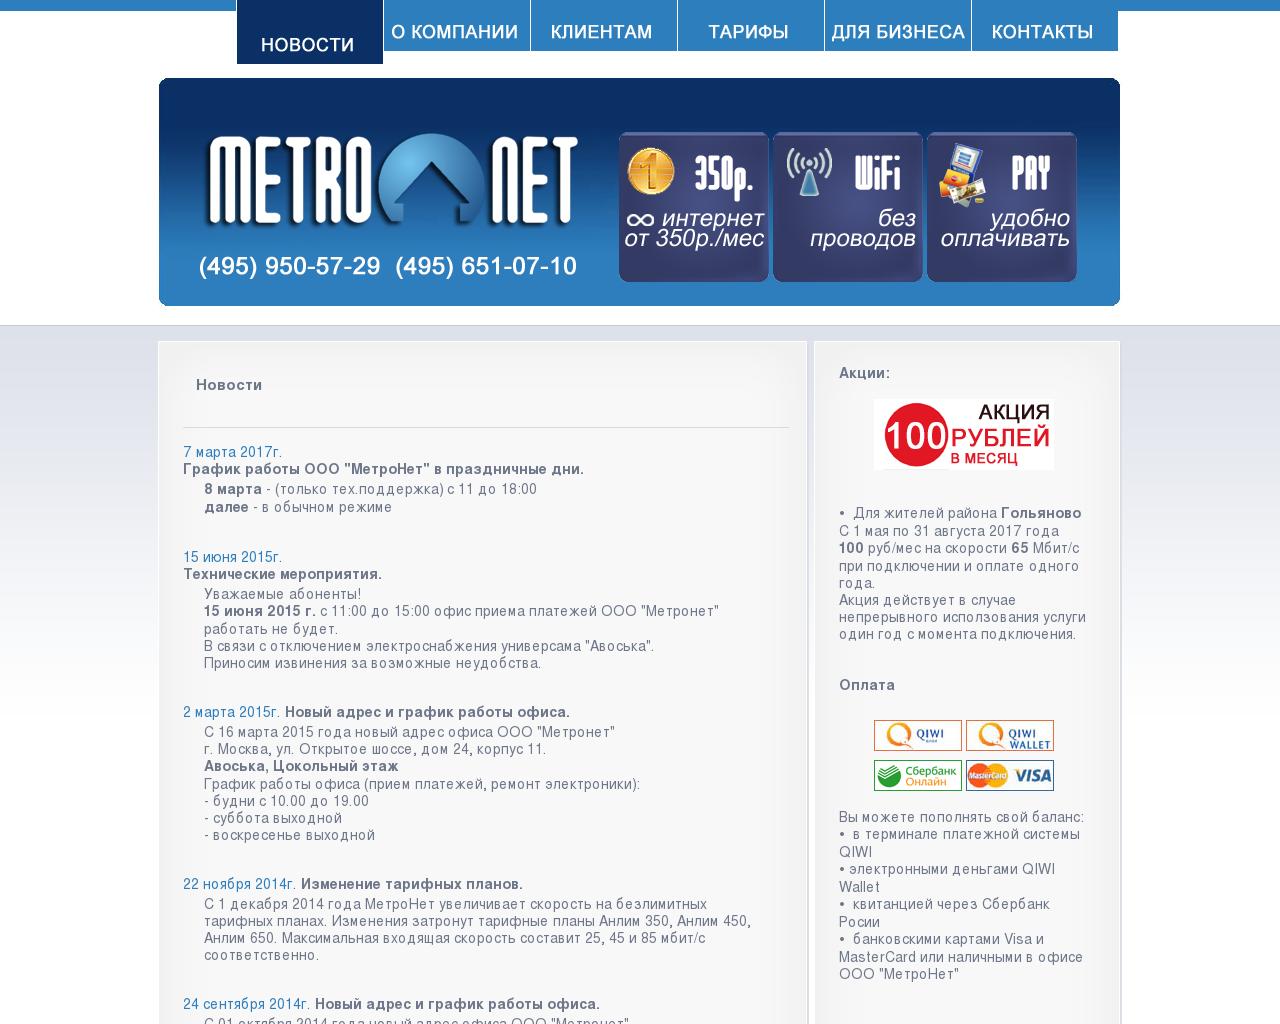 Изображение сайта metronet.ru в разрешении 1280x1024